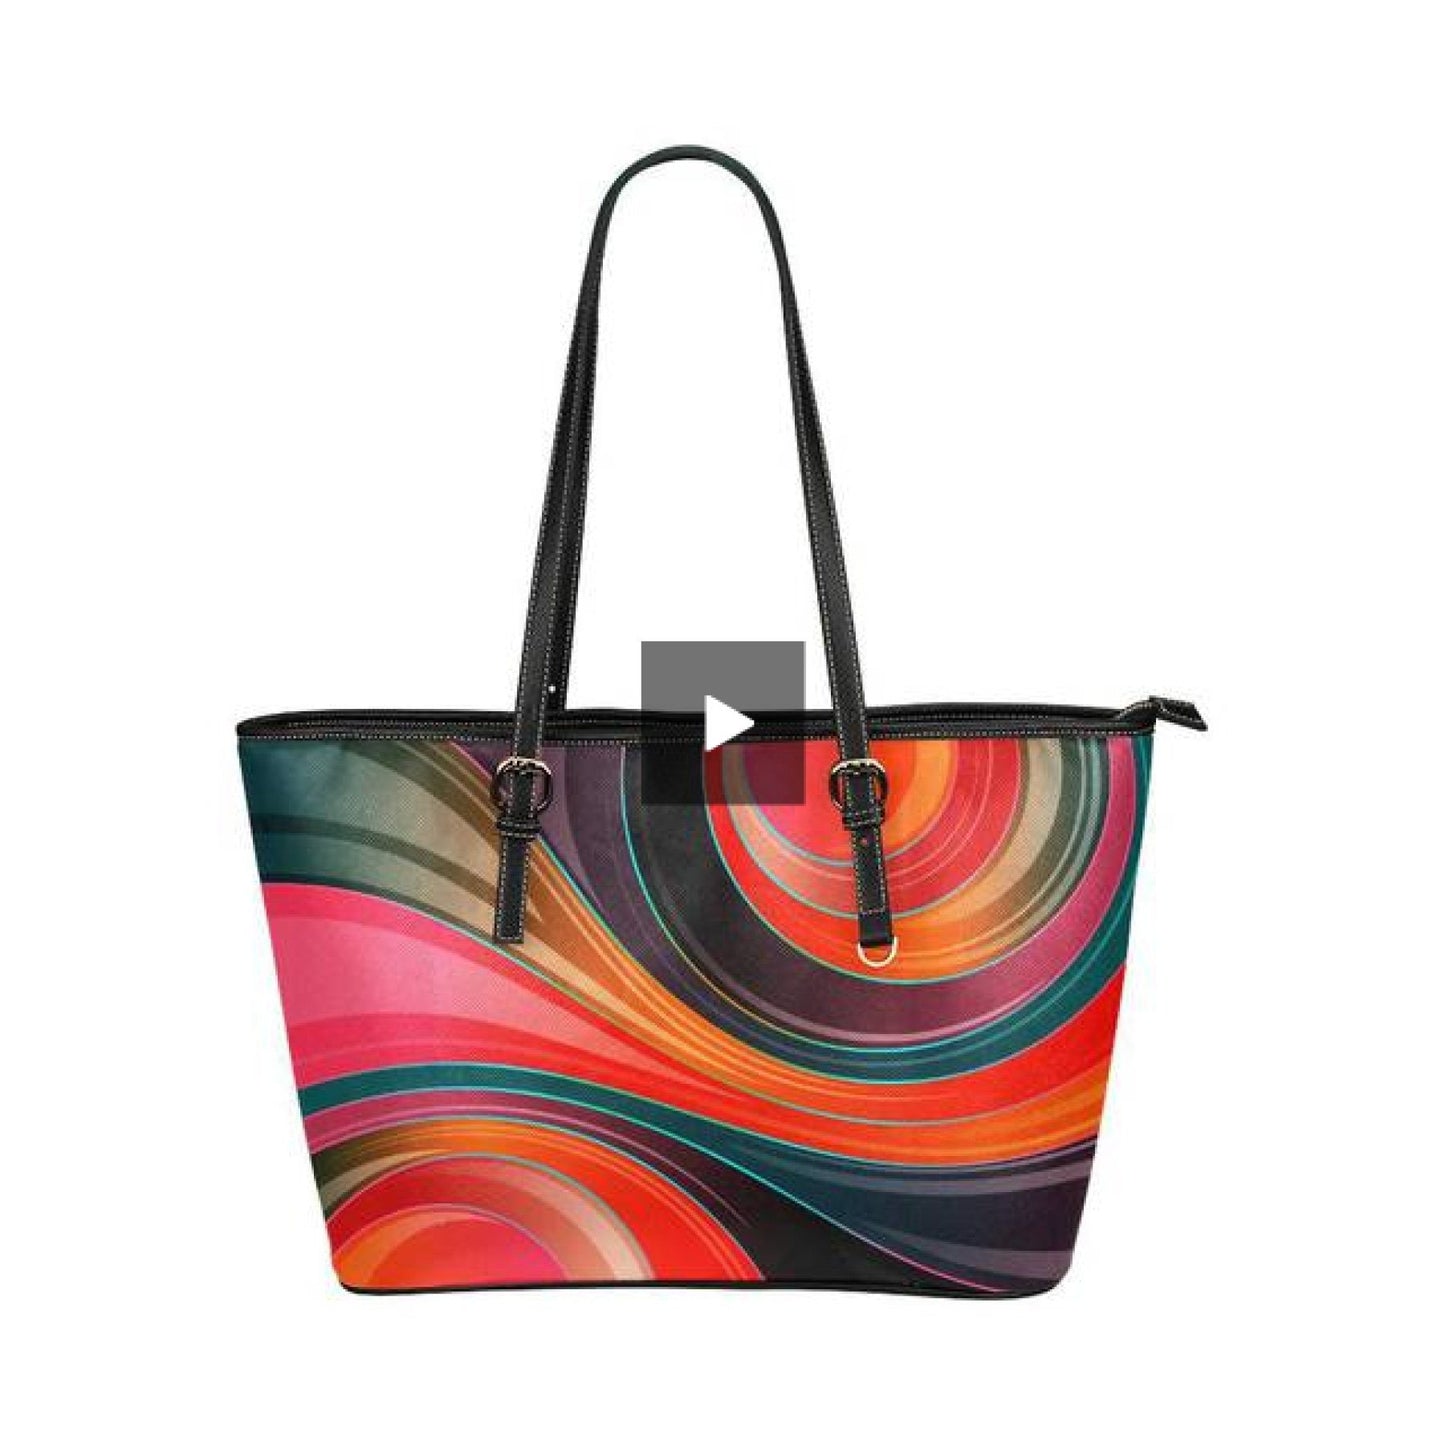 Colorful Circular Style Tote Bag